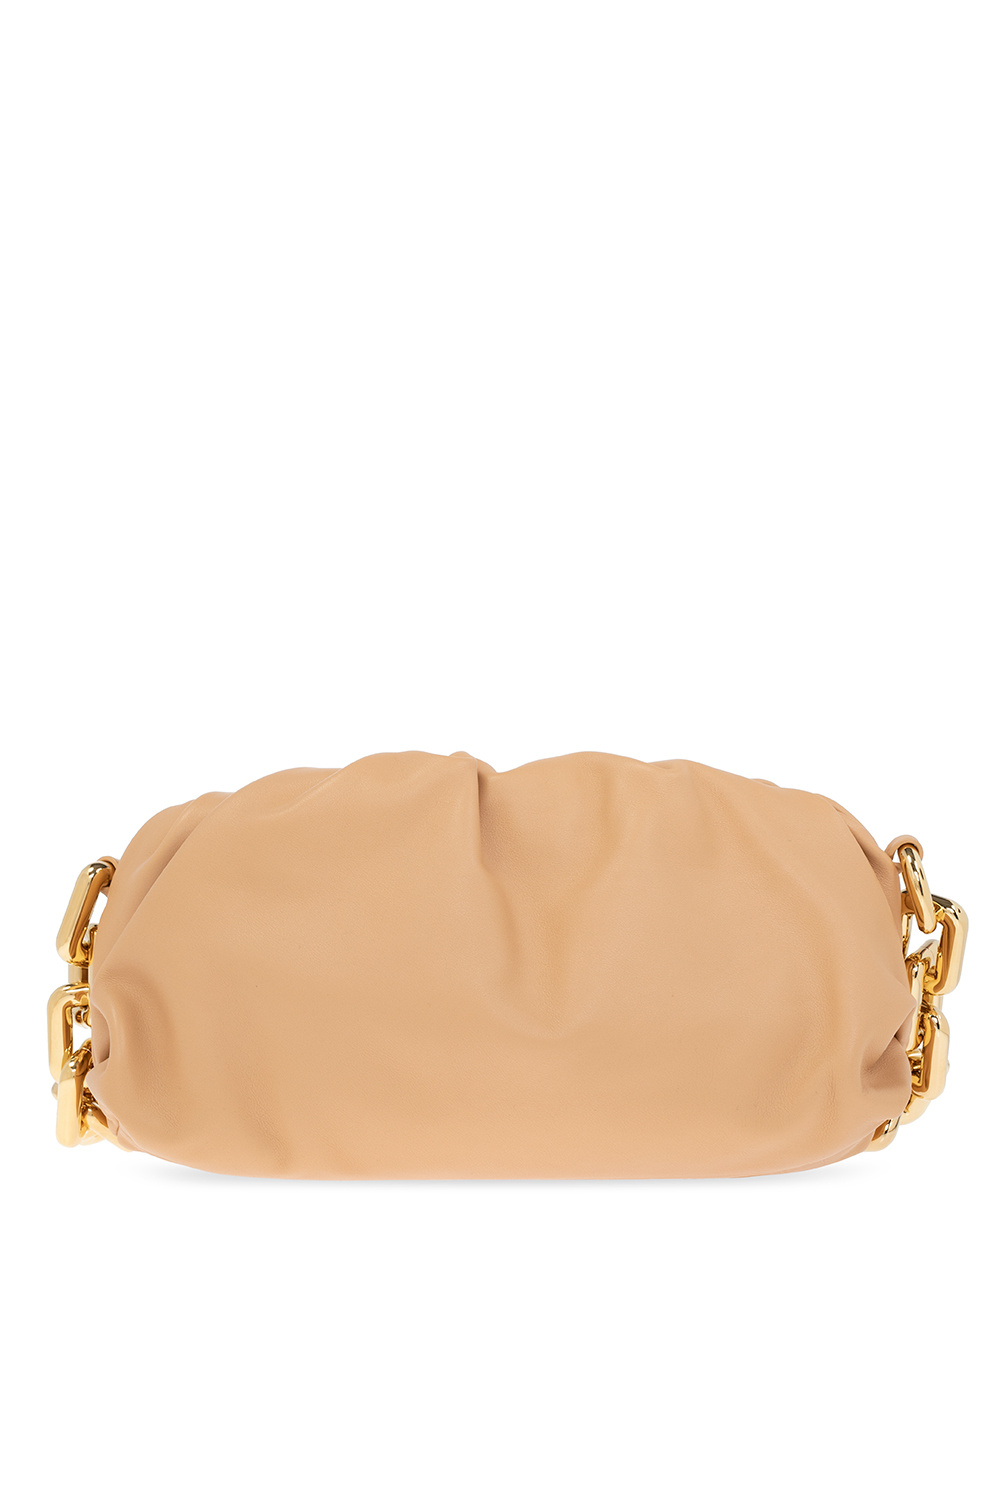 Bottega Veneta ‘Chain Pouch Small’ shoulder bag